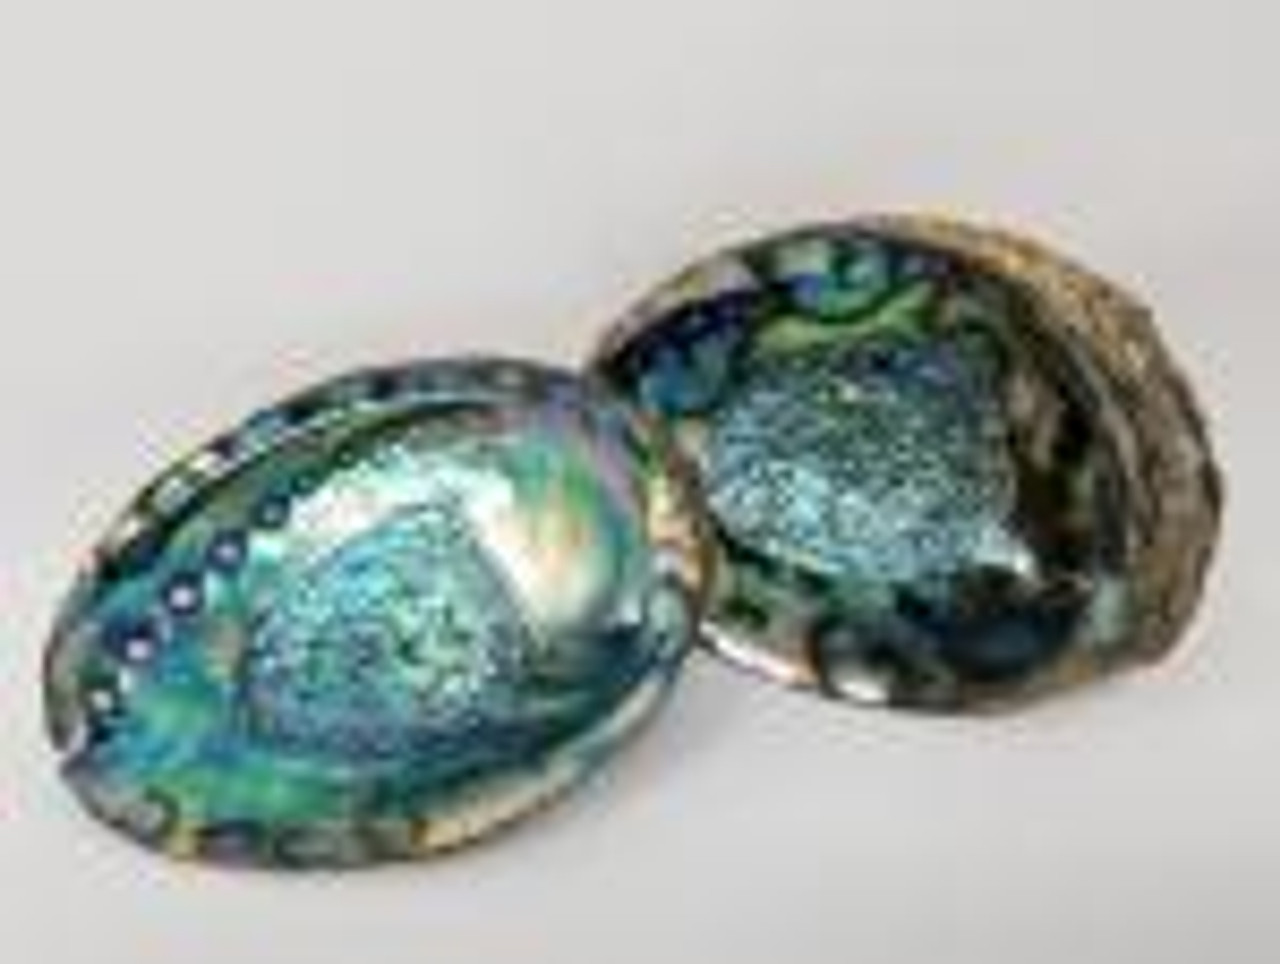 Beautiful Abalone Shells 7-8"